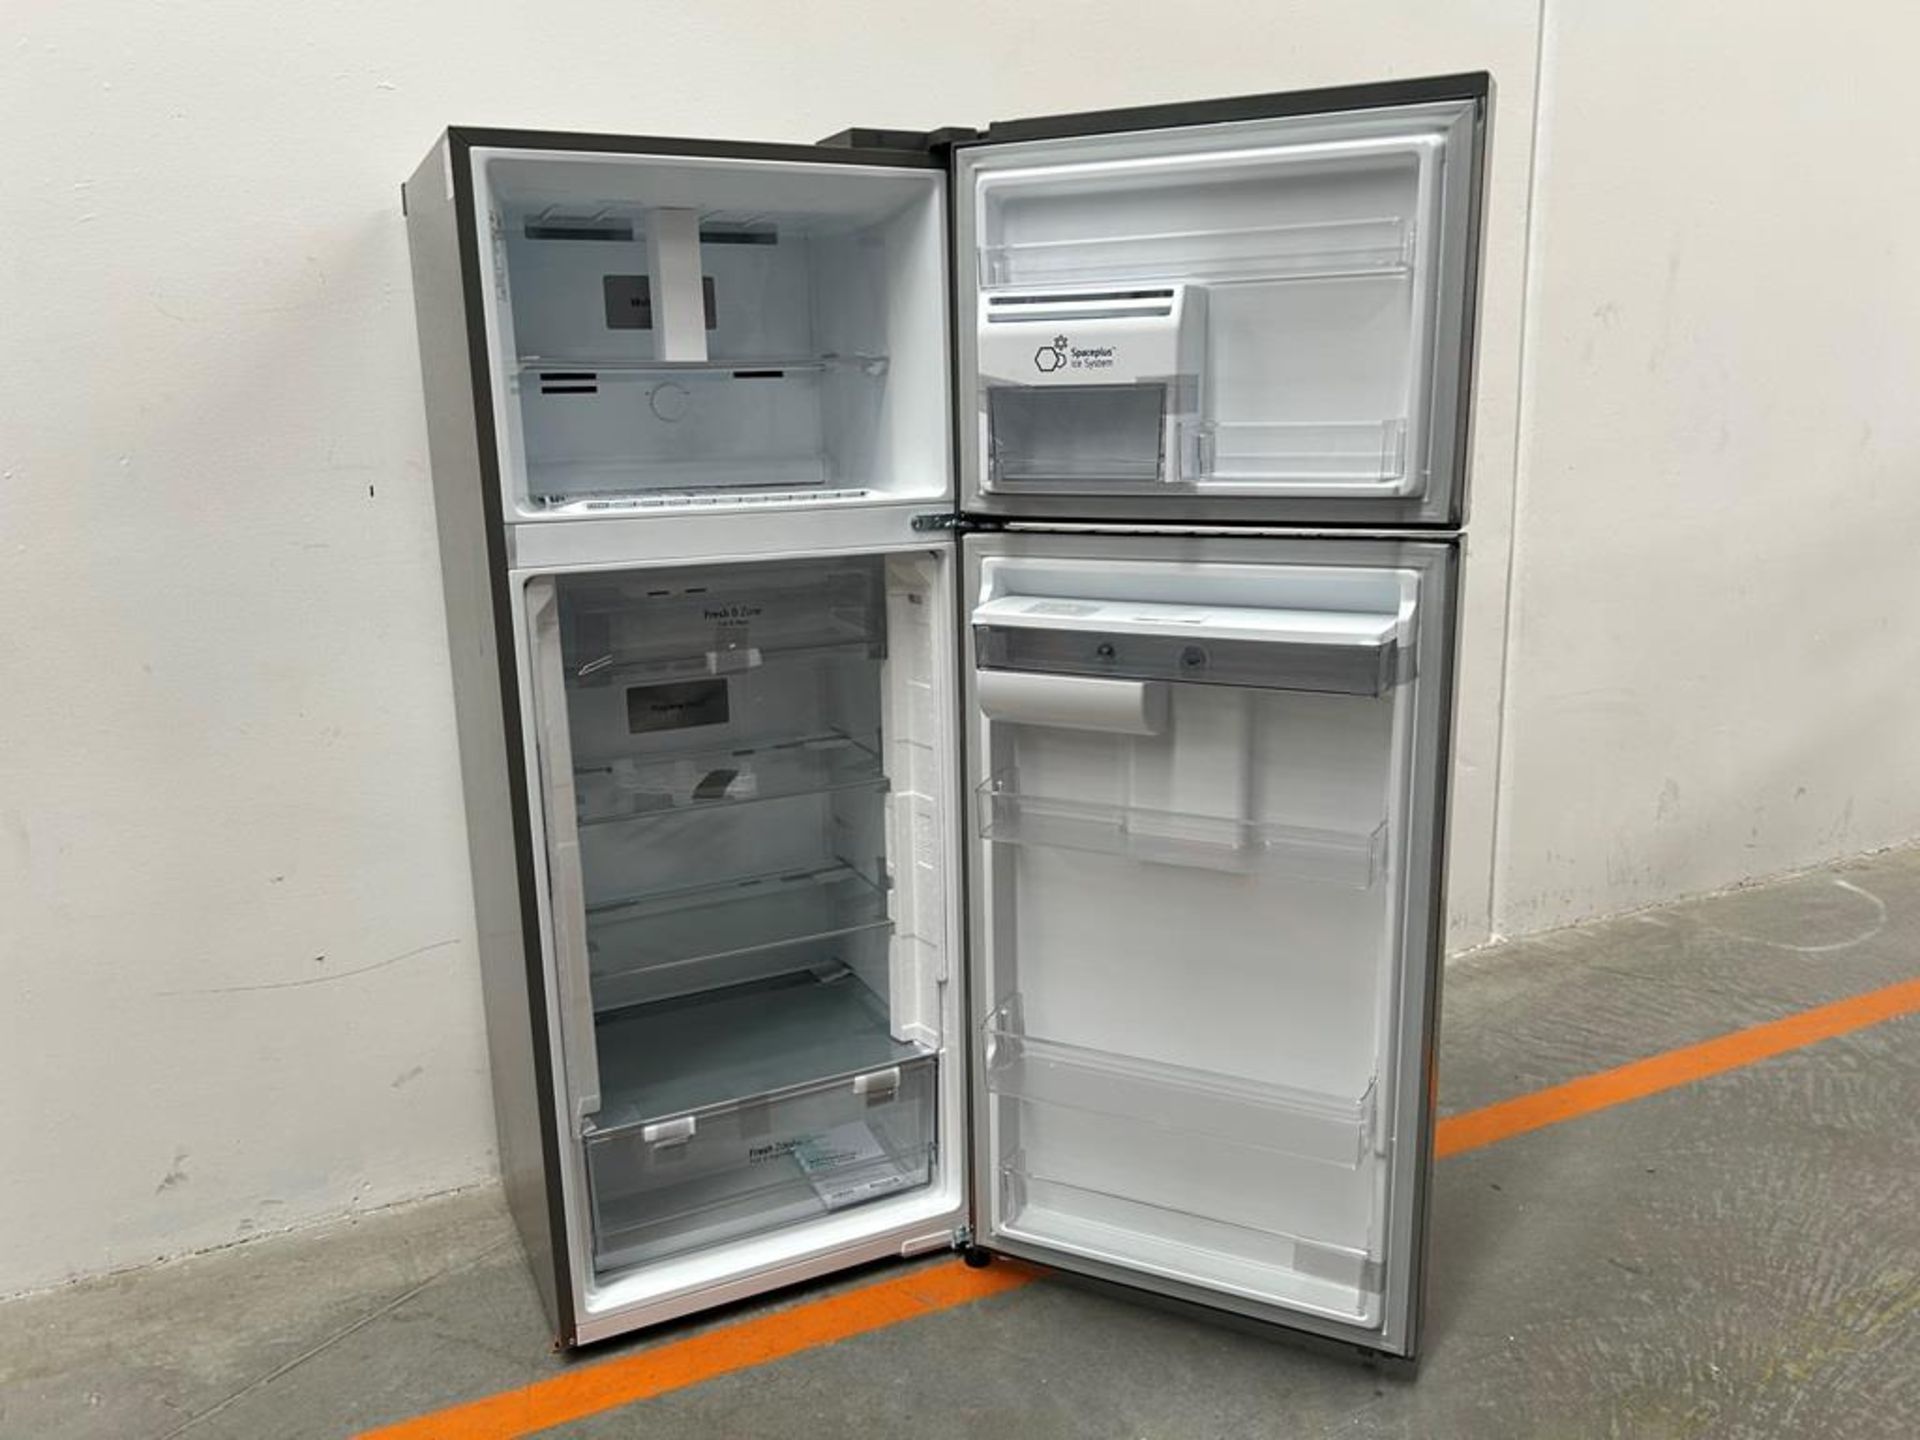 (NUEVO) Refrigerador con dispensador de agua Marca LG, Modelo VT40AWP, Serie 48304, Color GRIS - Image 4 of 11